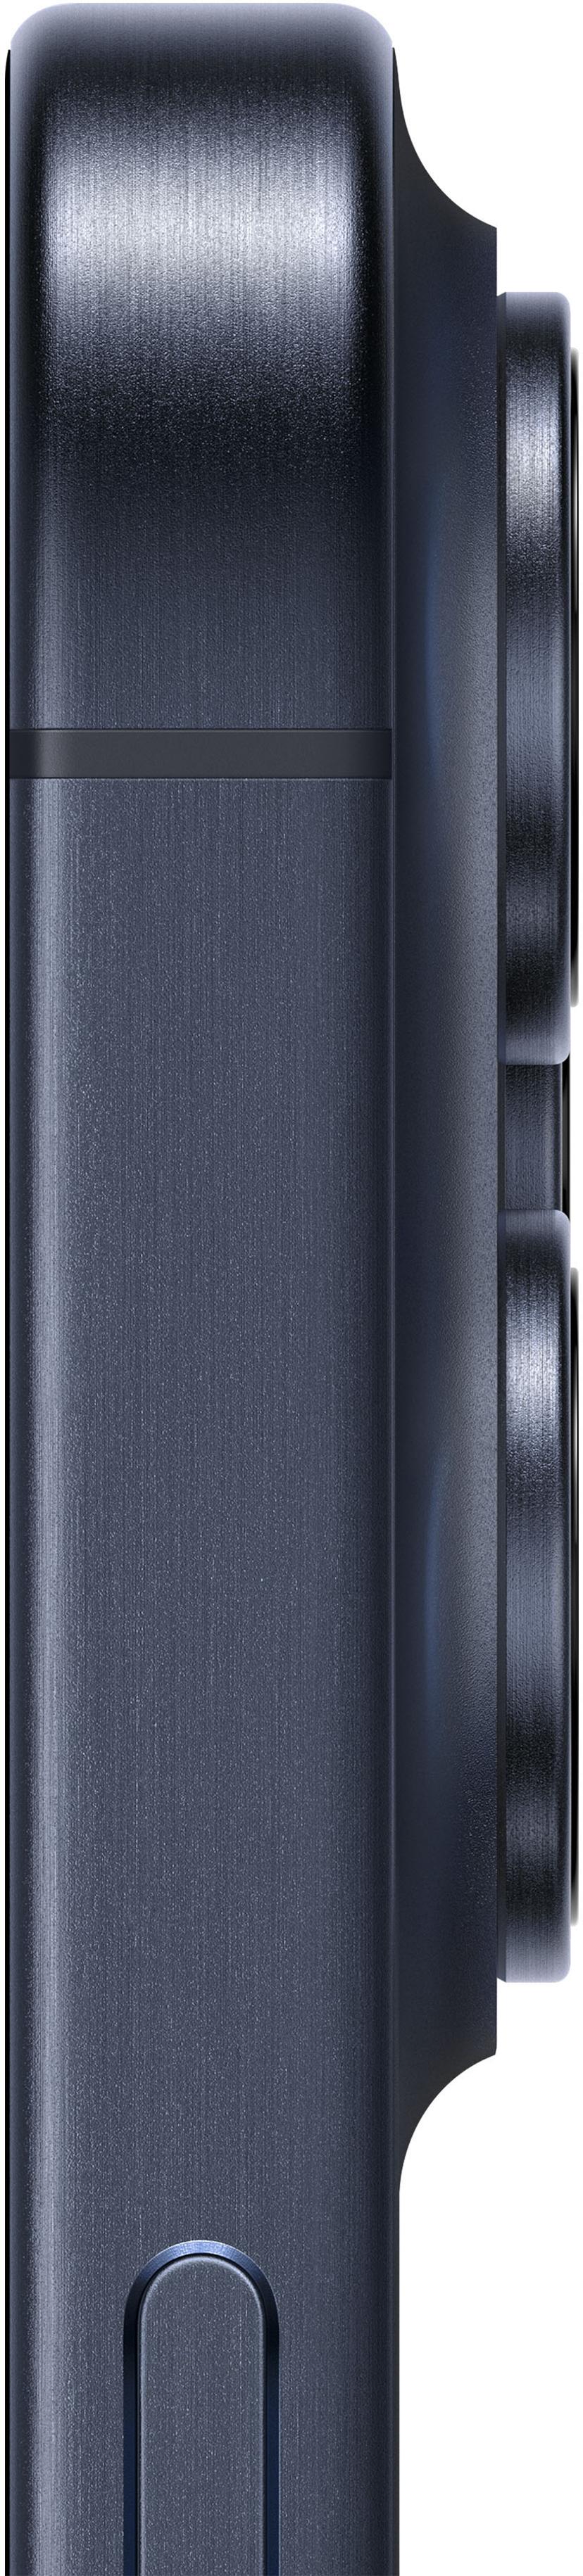 Apple iPhone 15 Pro Max 512GB Sininen, Titaani